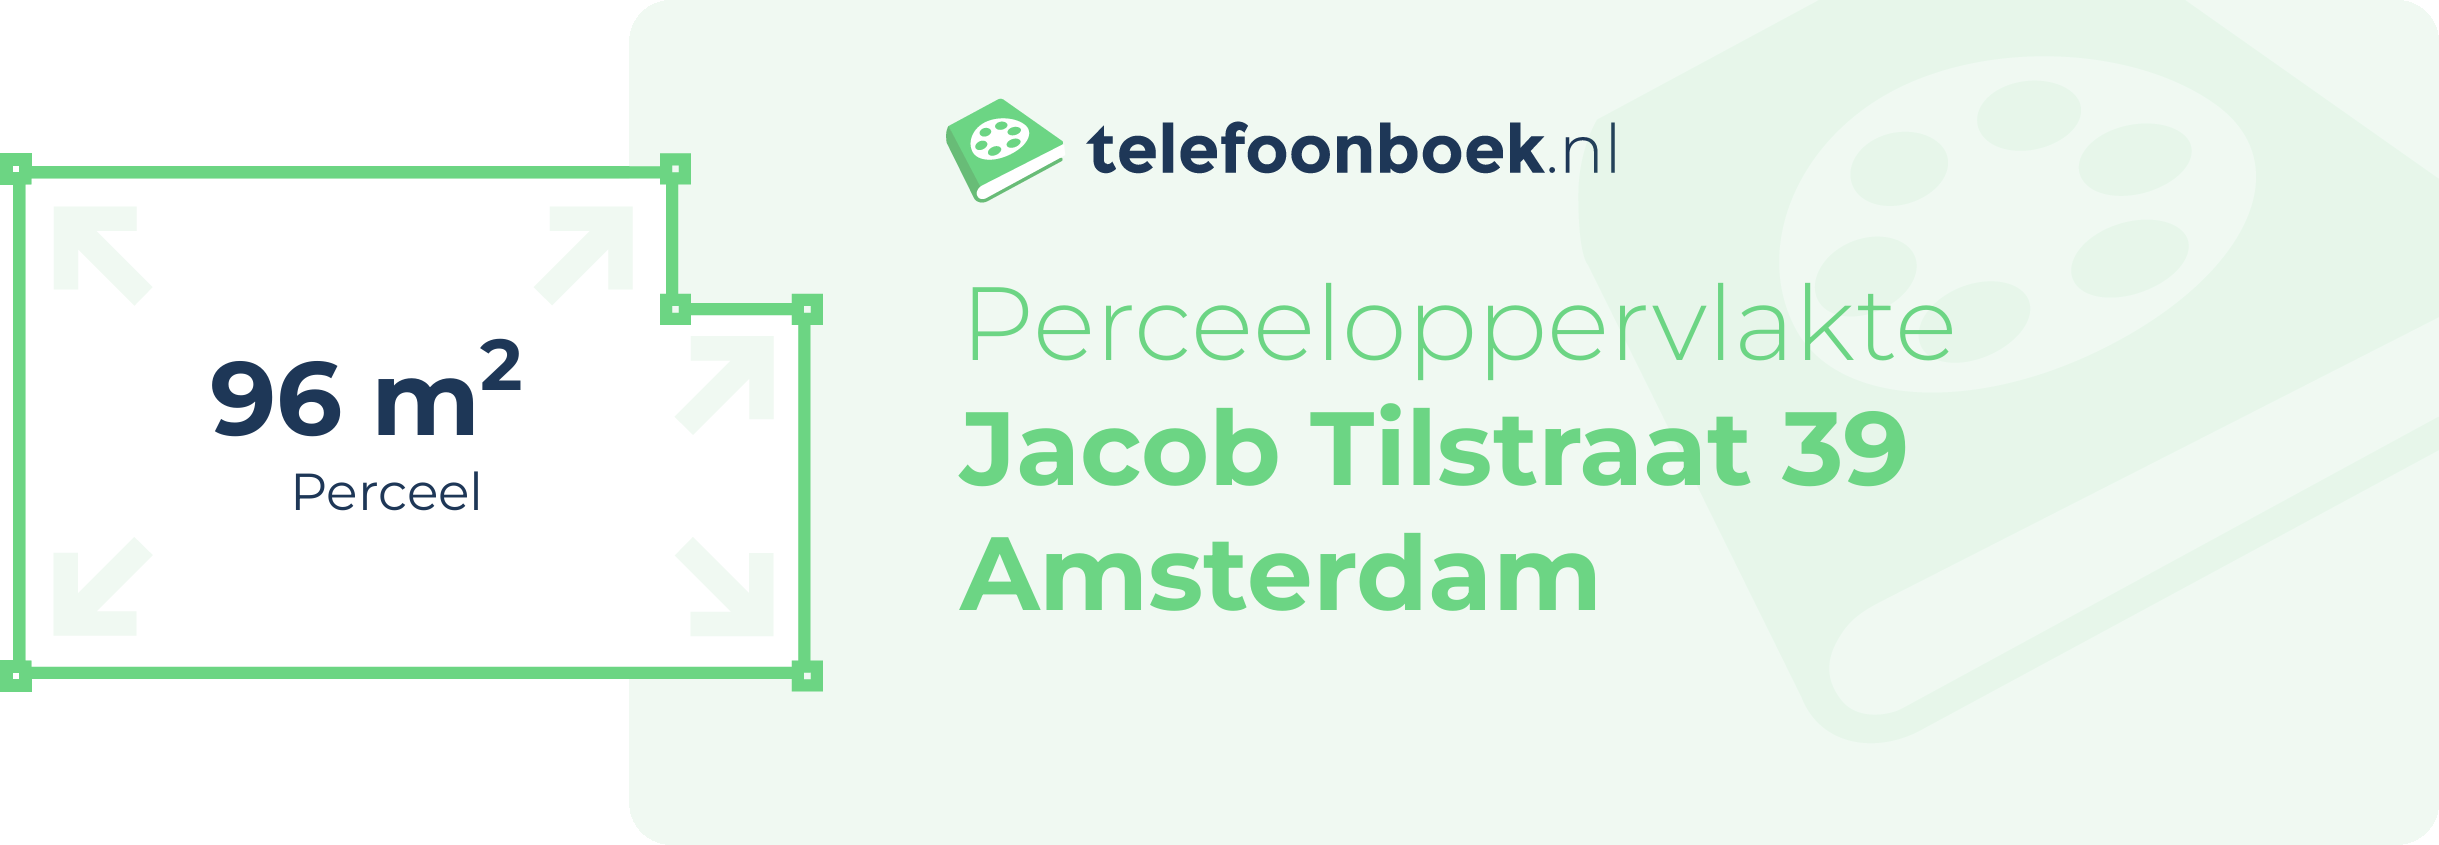 Perceeloppervlakte Jacob Tilstraat 39 Amsterdam